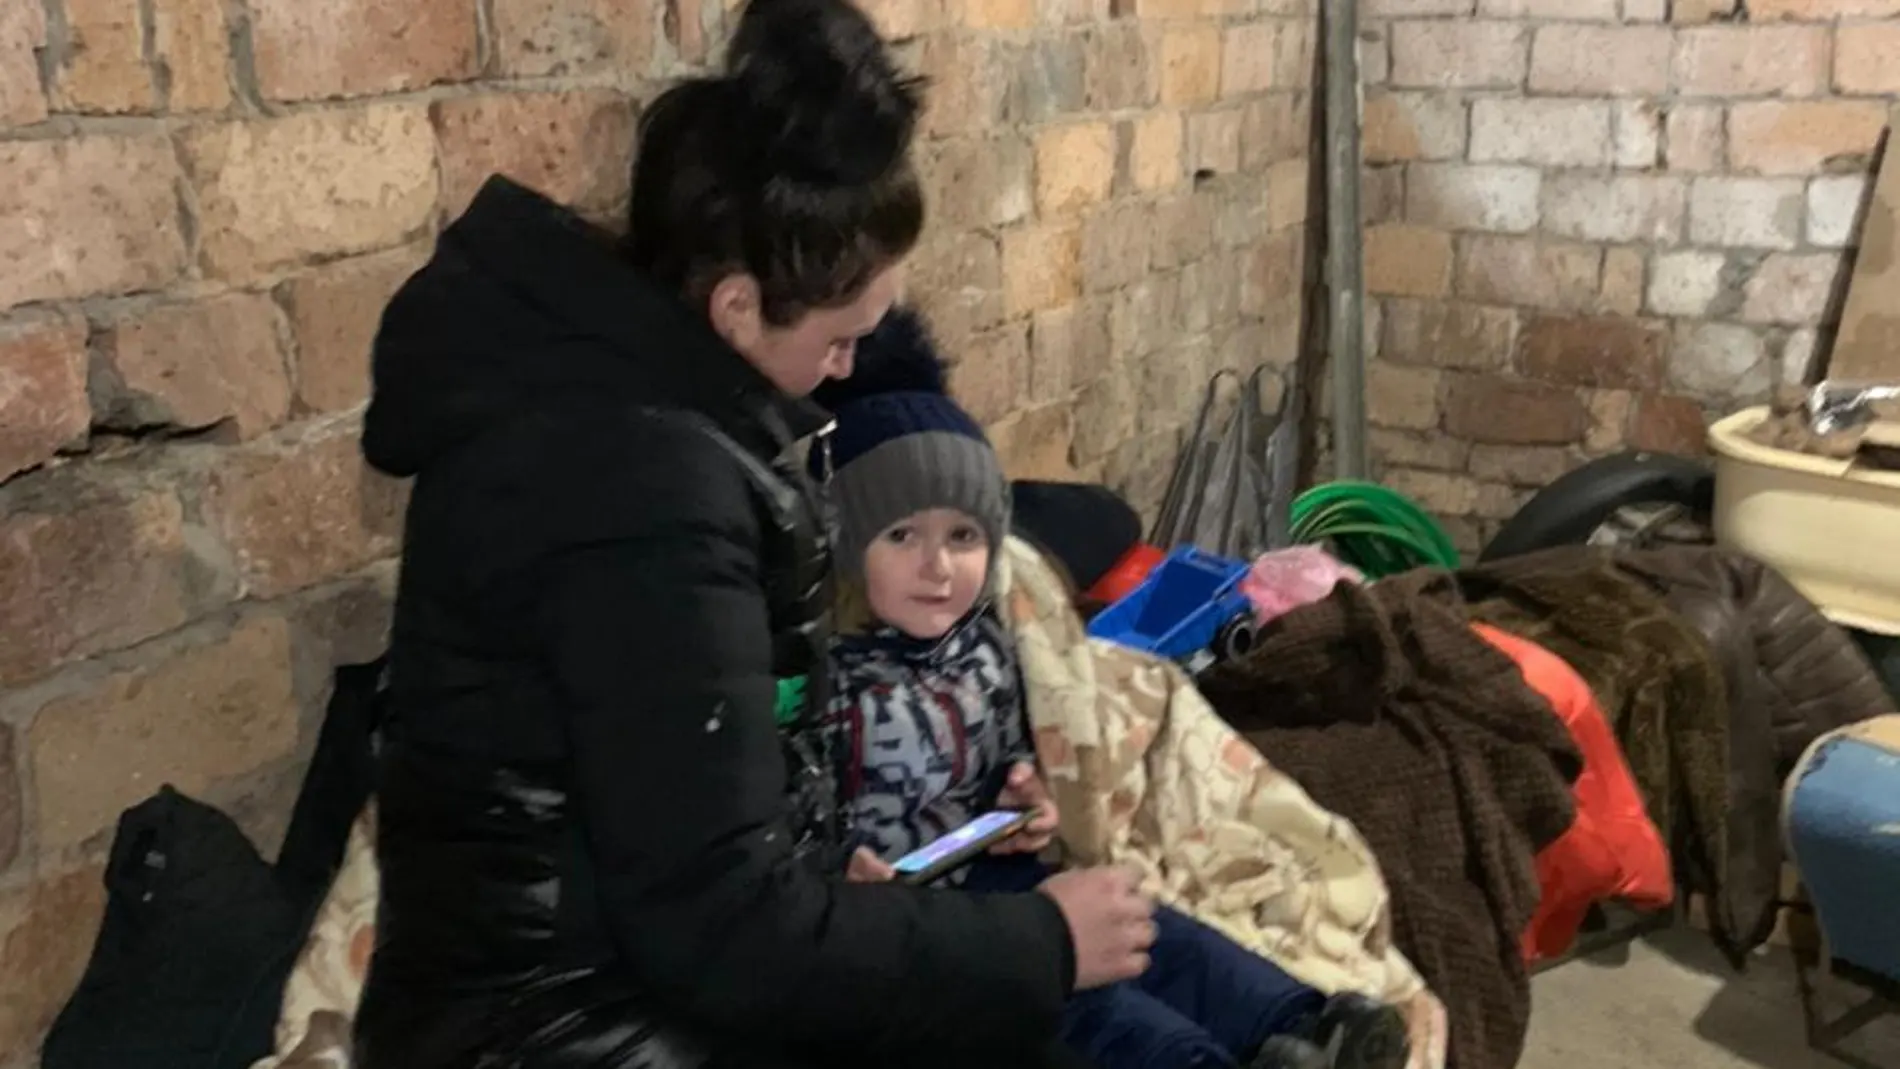 La prima de Yana, Daria, con su hijo David refugiados en un sótano en Ucrania